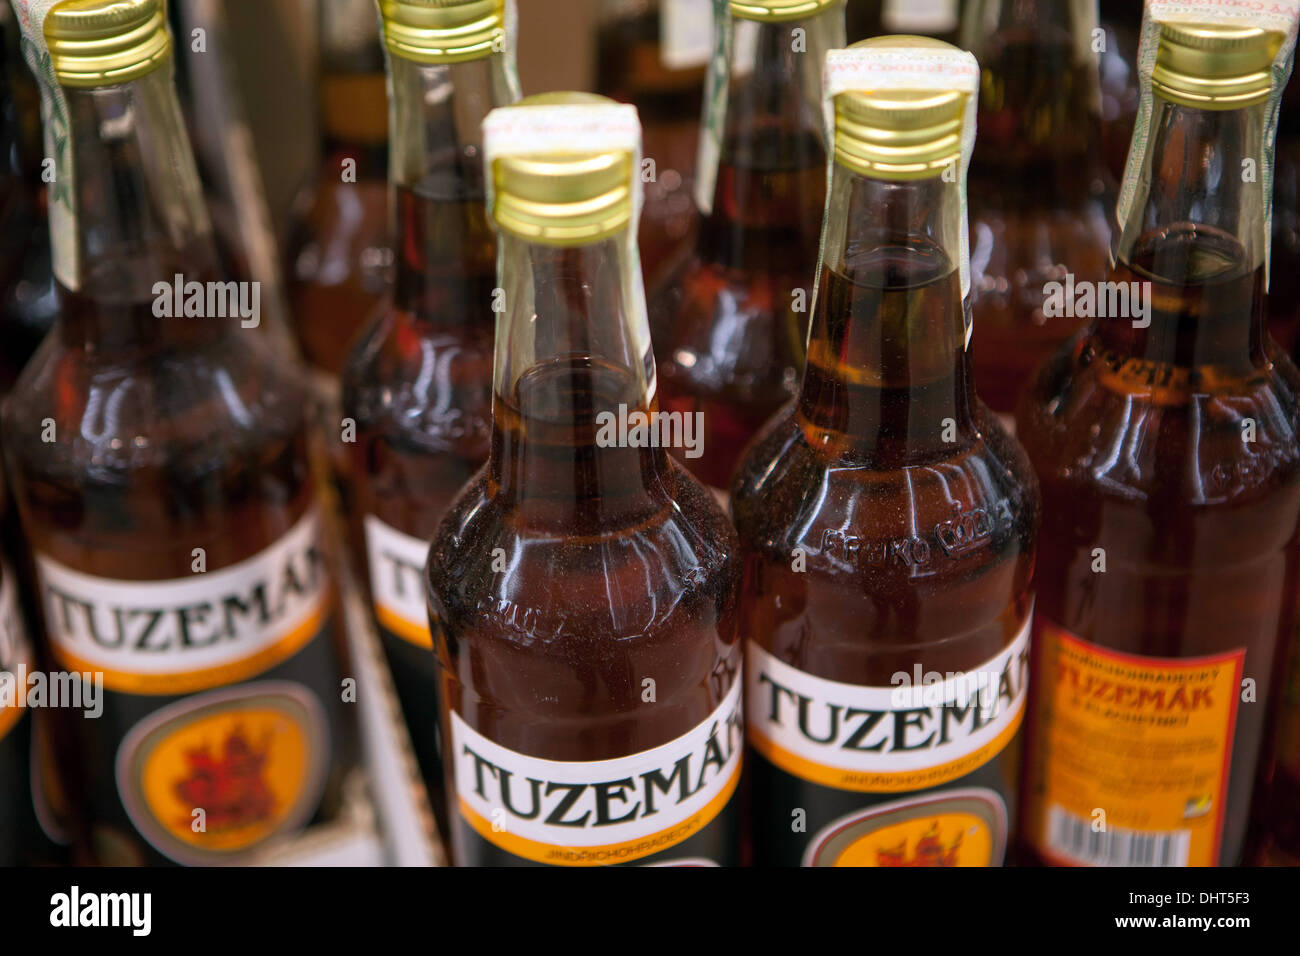 Tuzemak ist tschechisch destillierter alkoholischer Likör Supermarkt, Flaschen Stockfoto